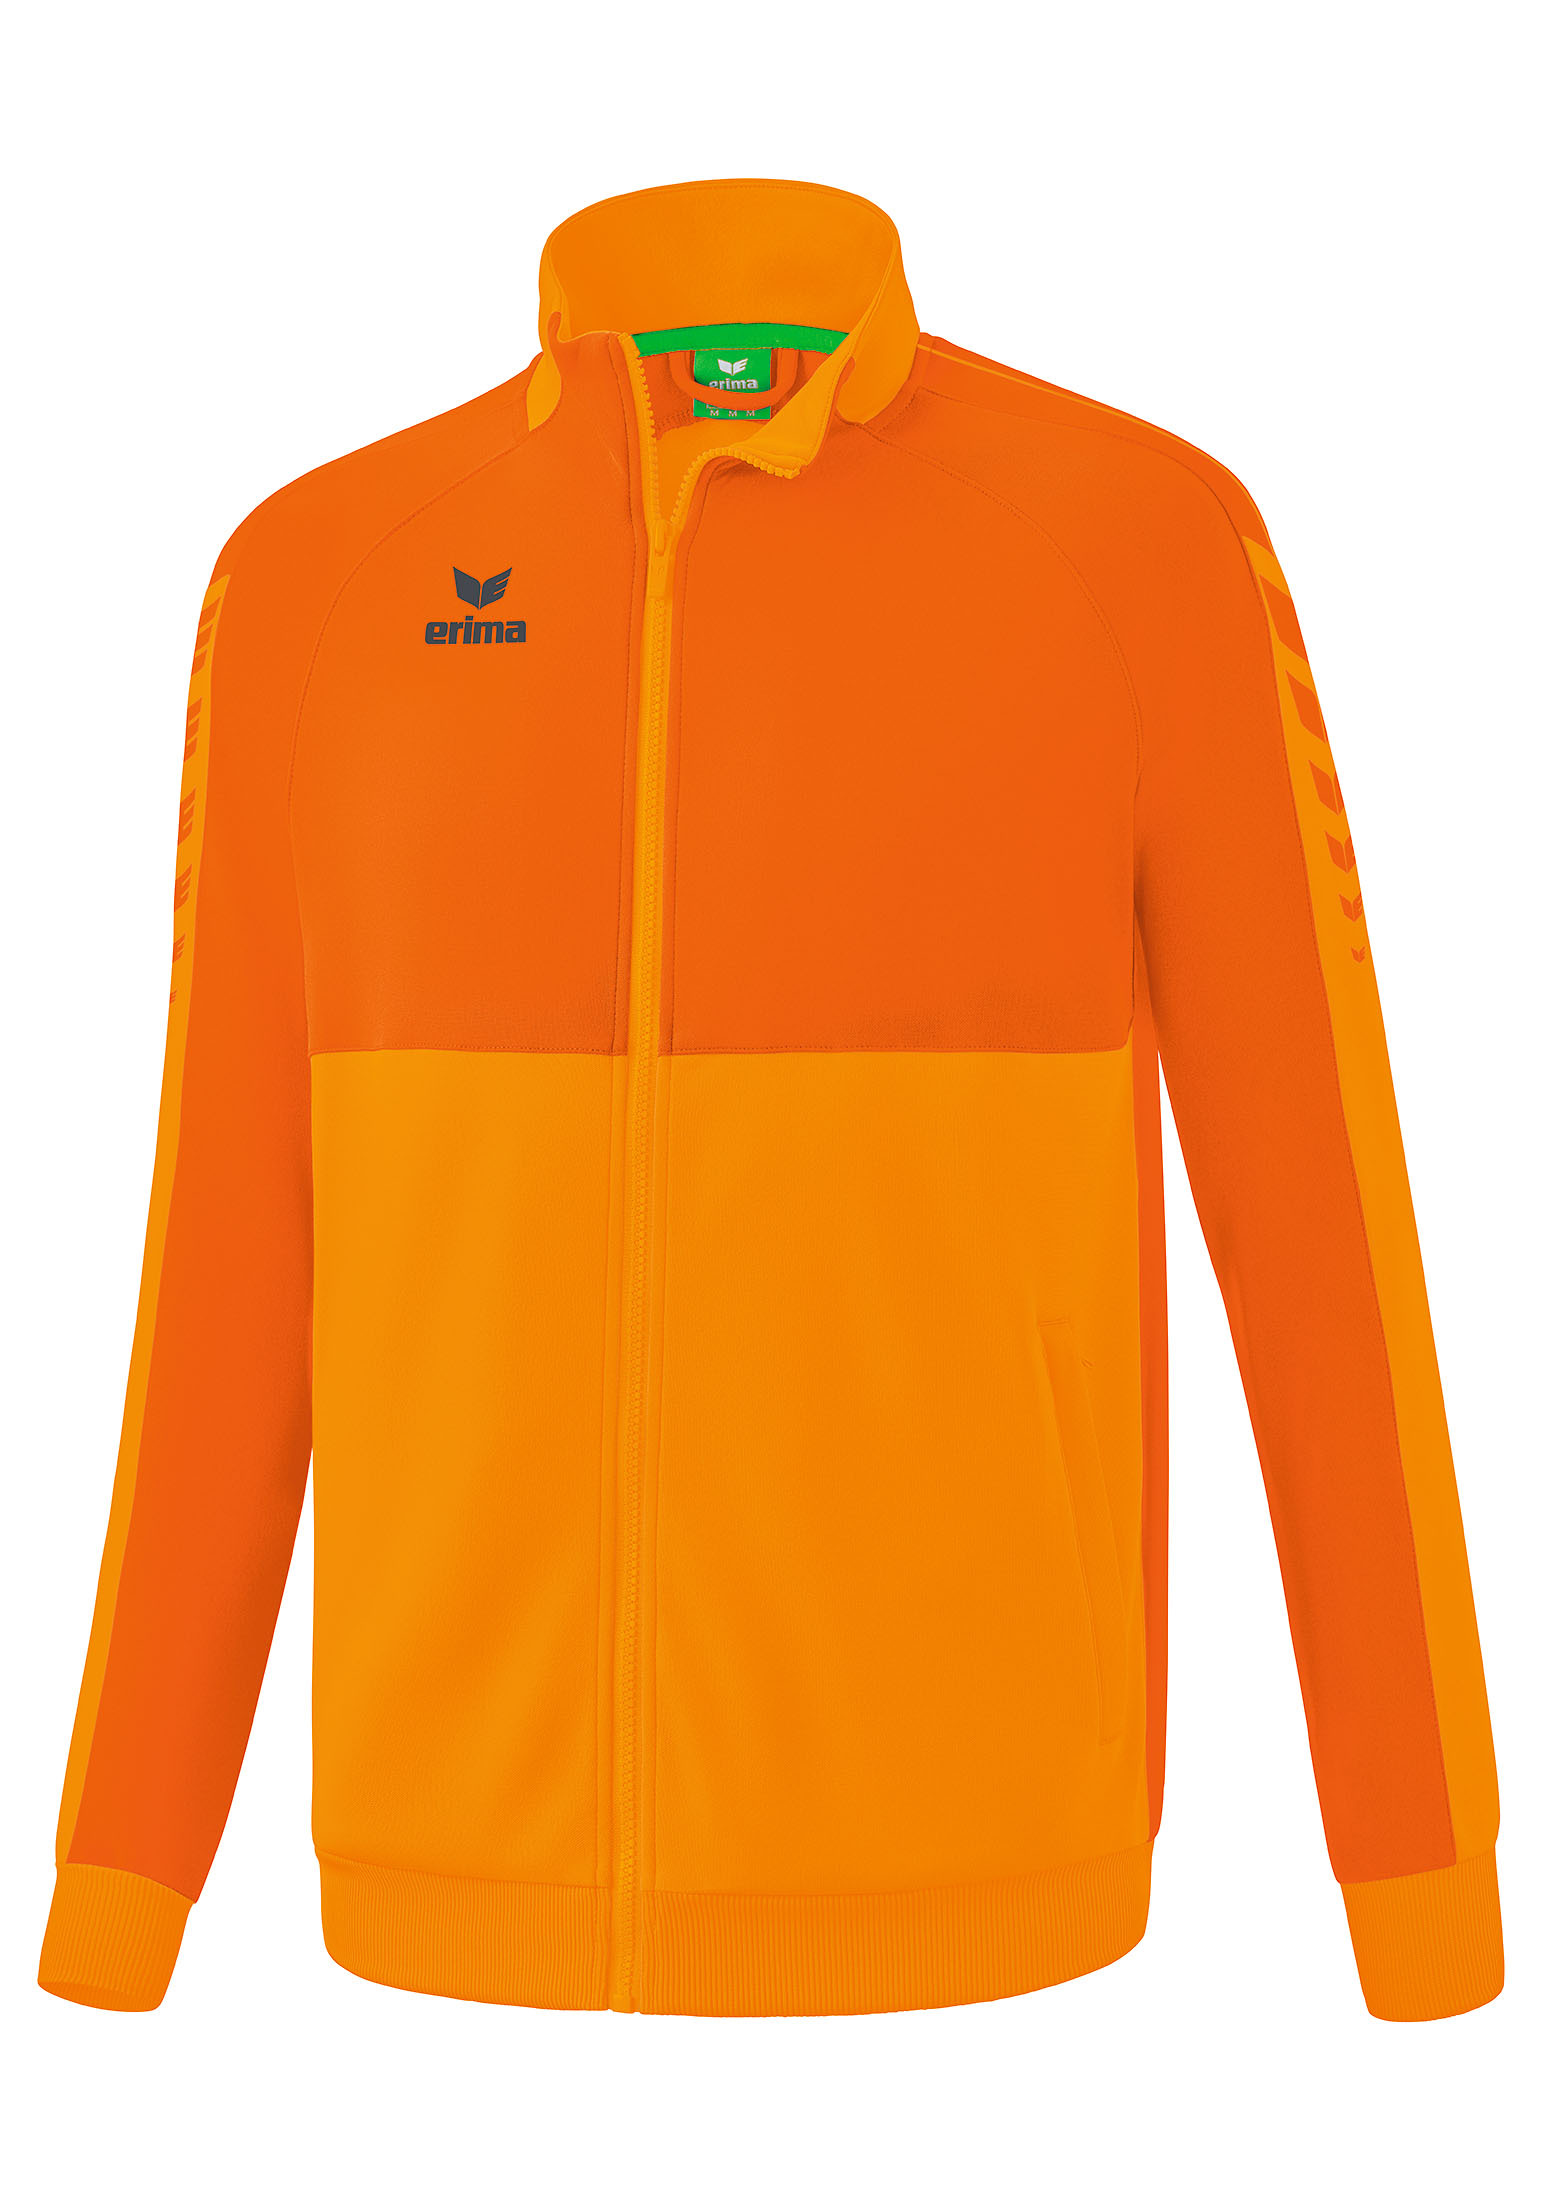 Спортивная куртка erima Six Wings Worker, Jacke, цвет new orange/orange